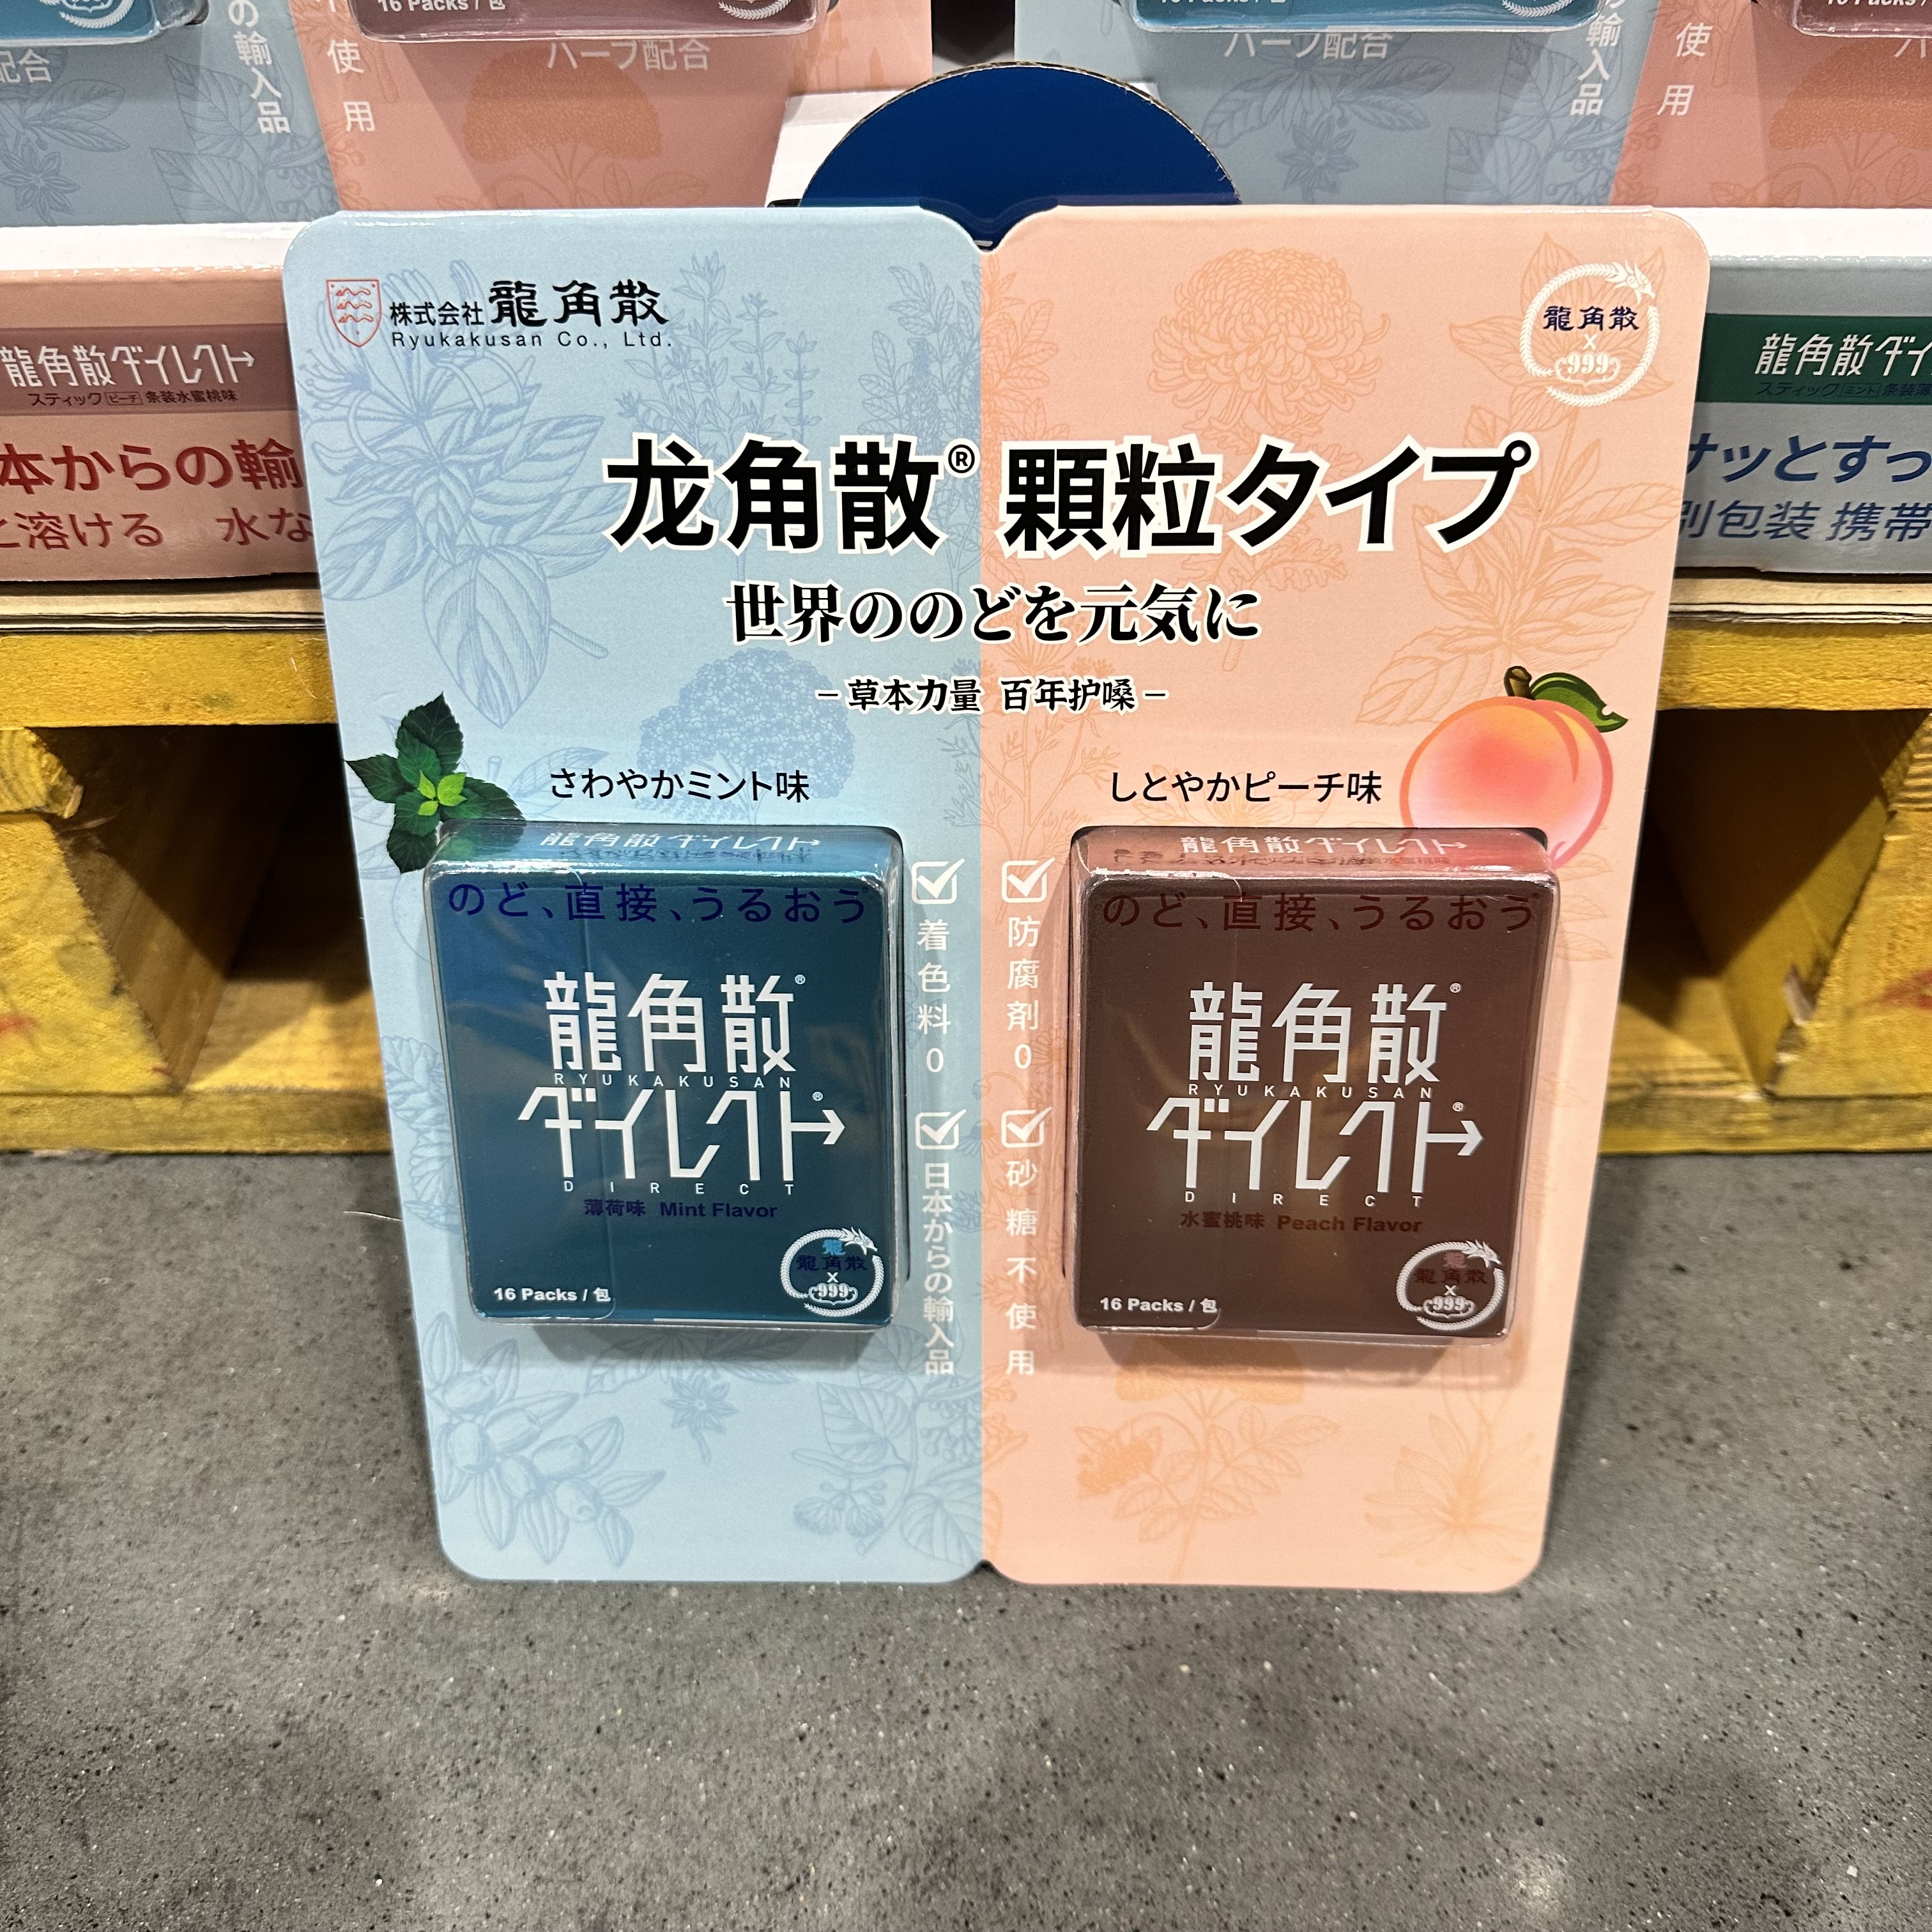 豆豆山姆代购日本进口龙角散免水润EX颗粒糖/清爽薄荷+香甜蜜桃